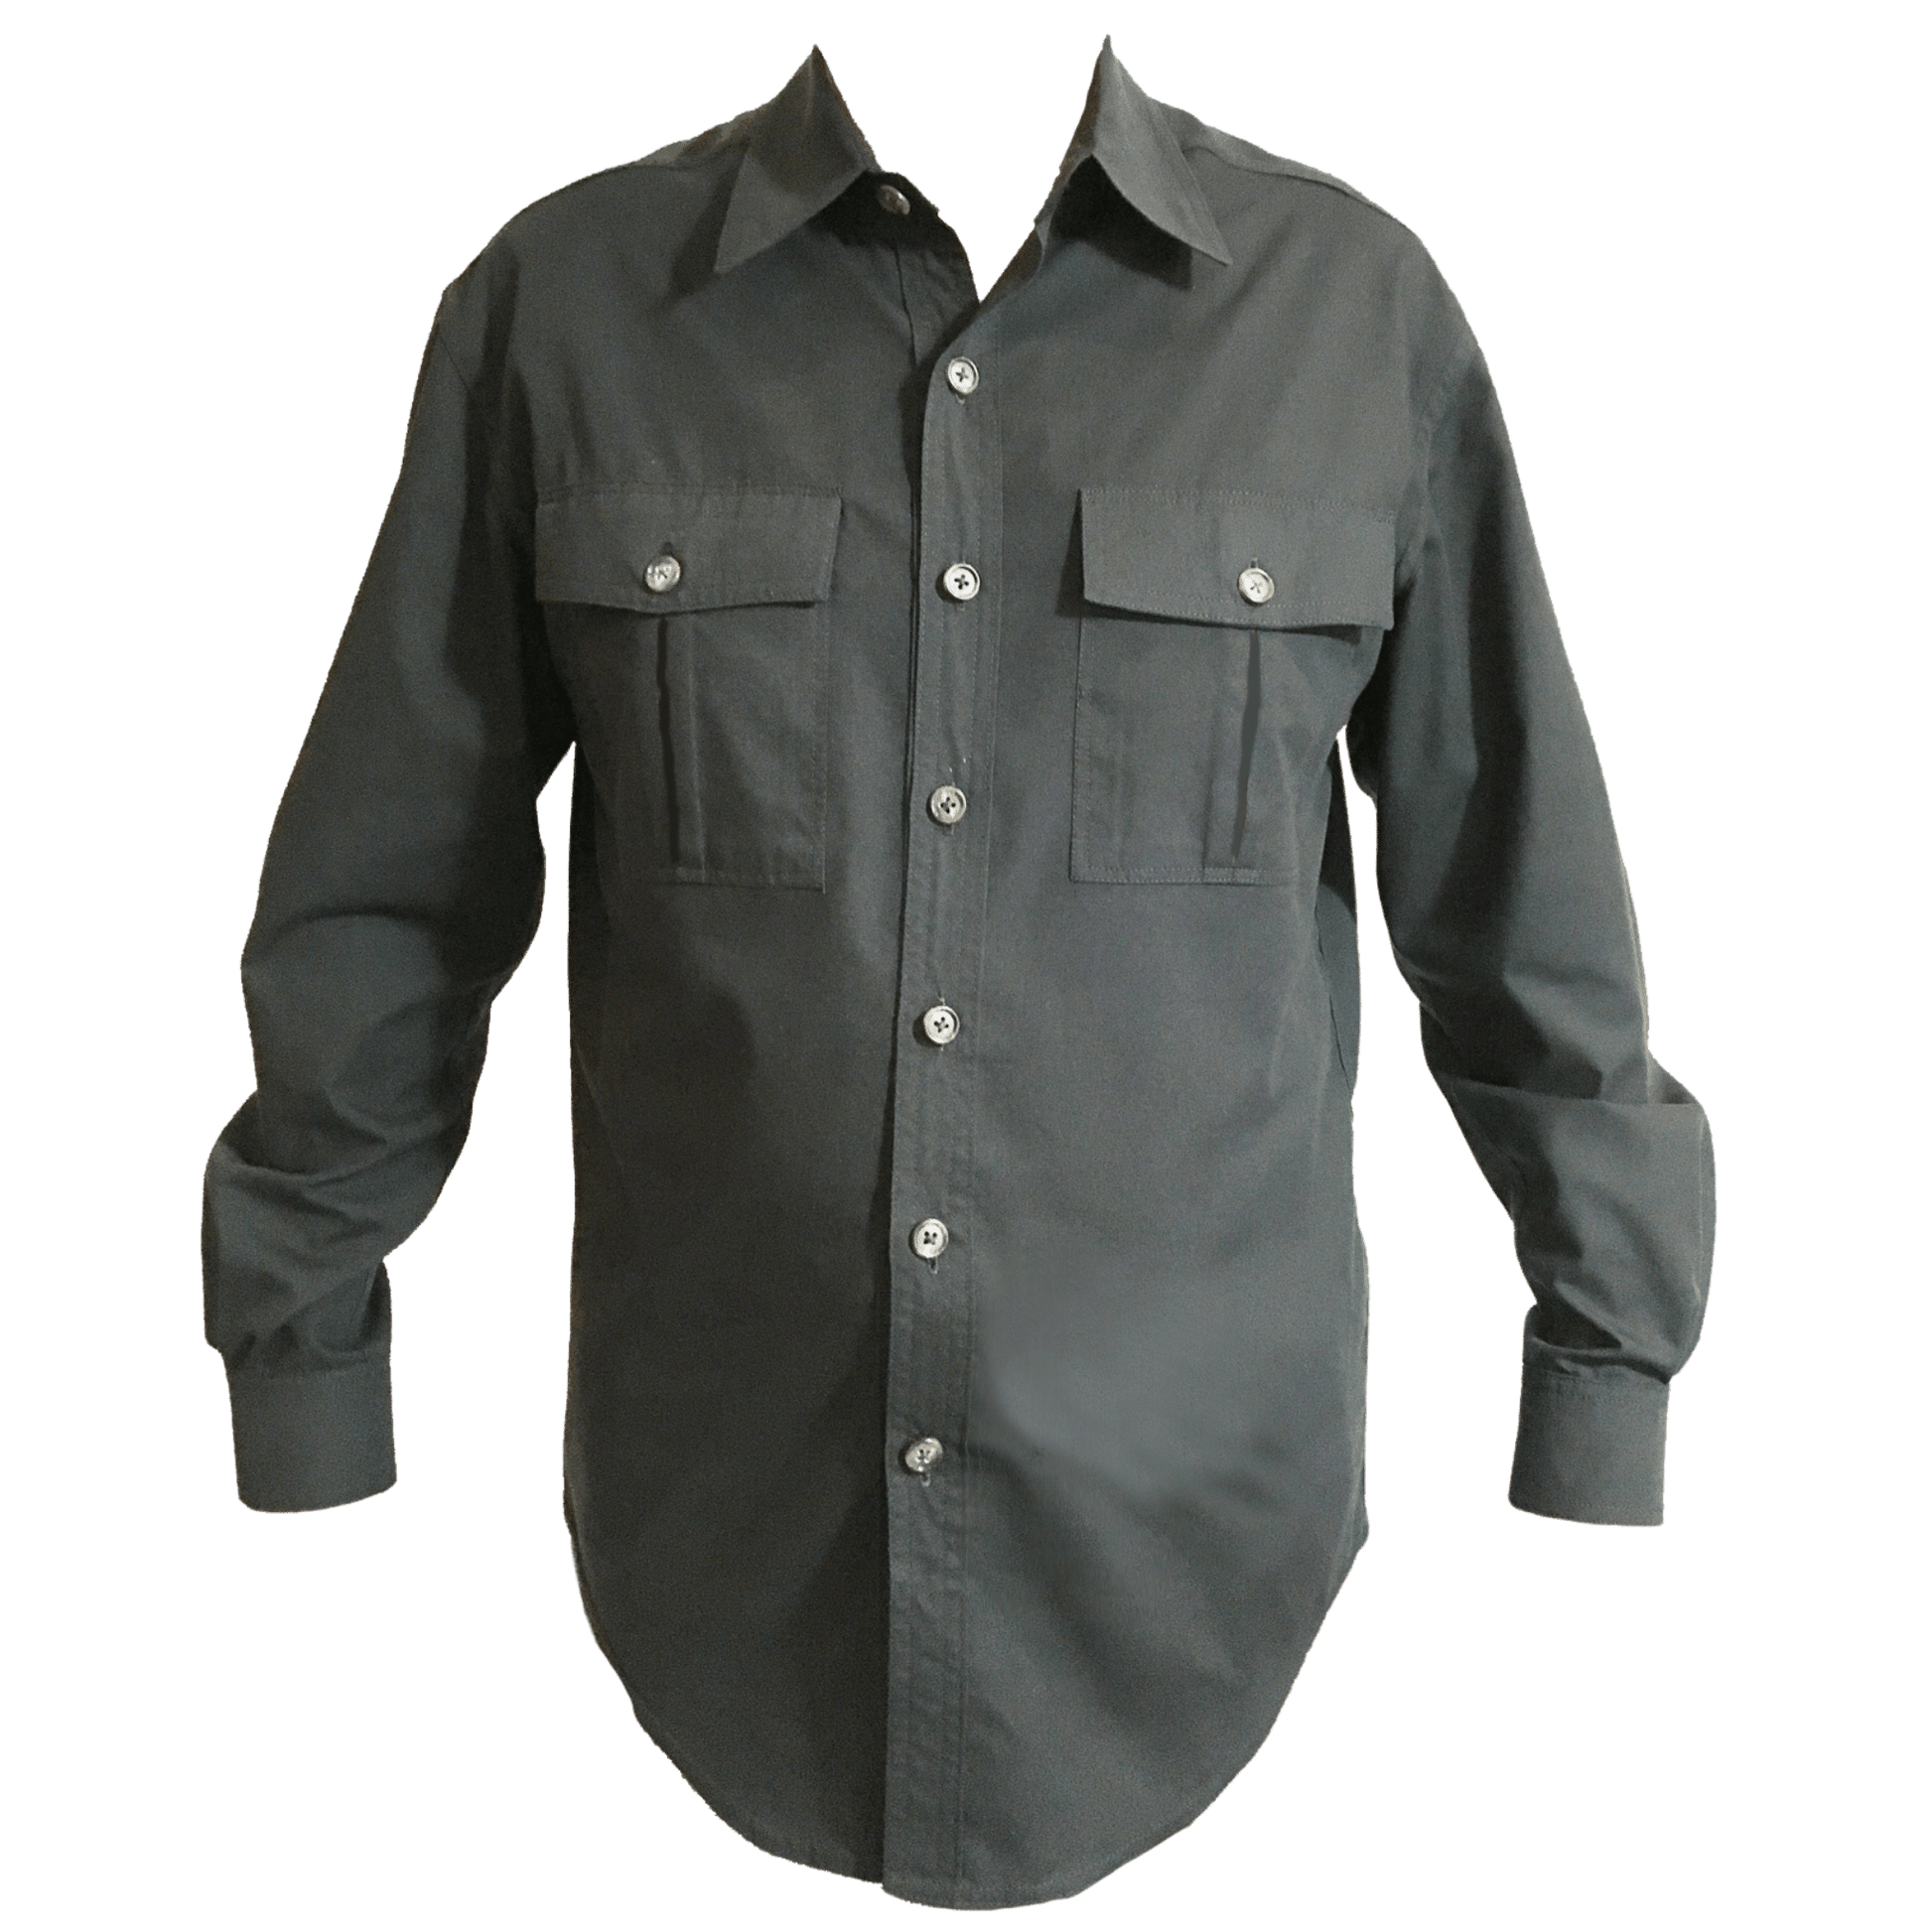 An olive green men's button up shirt